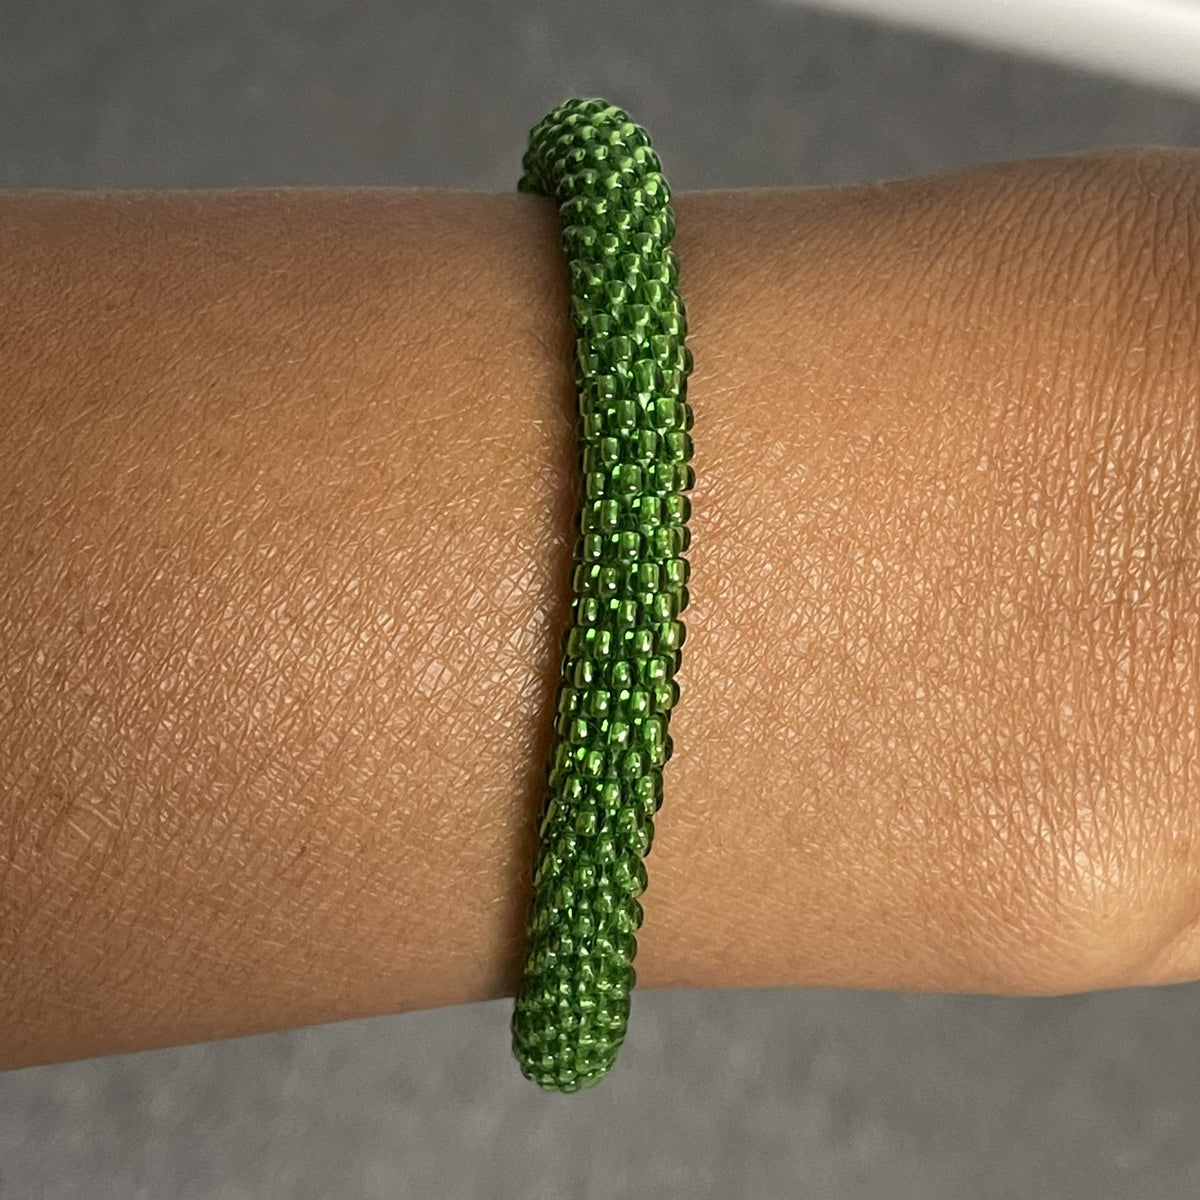 Sashka Co. Extended 8" Bracelet Emerald Green Emerald Green Bracelet - Extended 8"